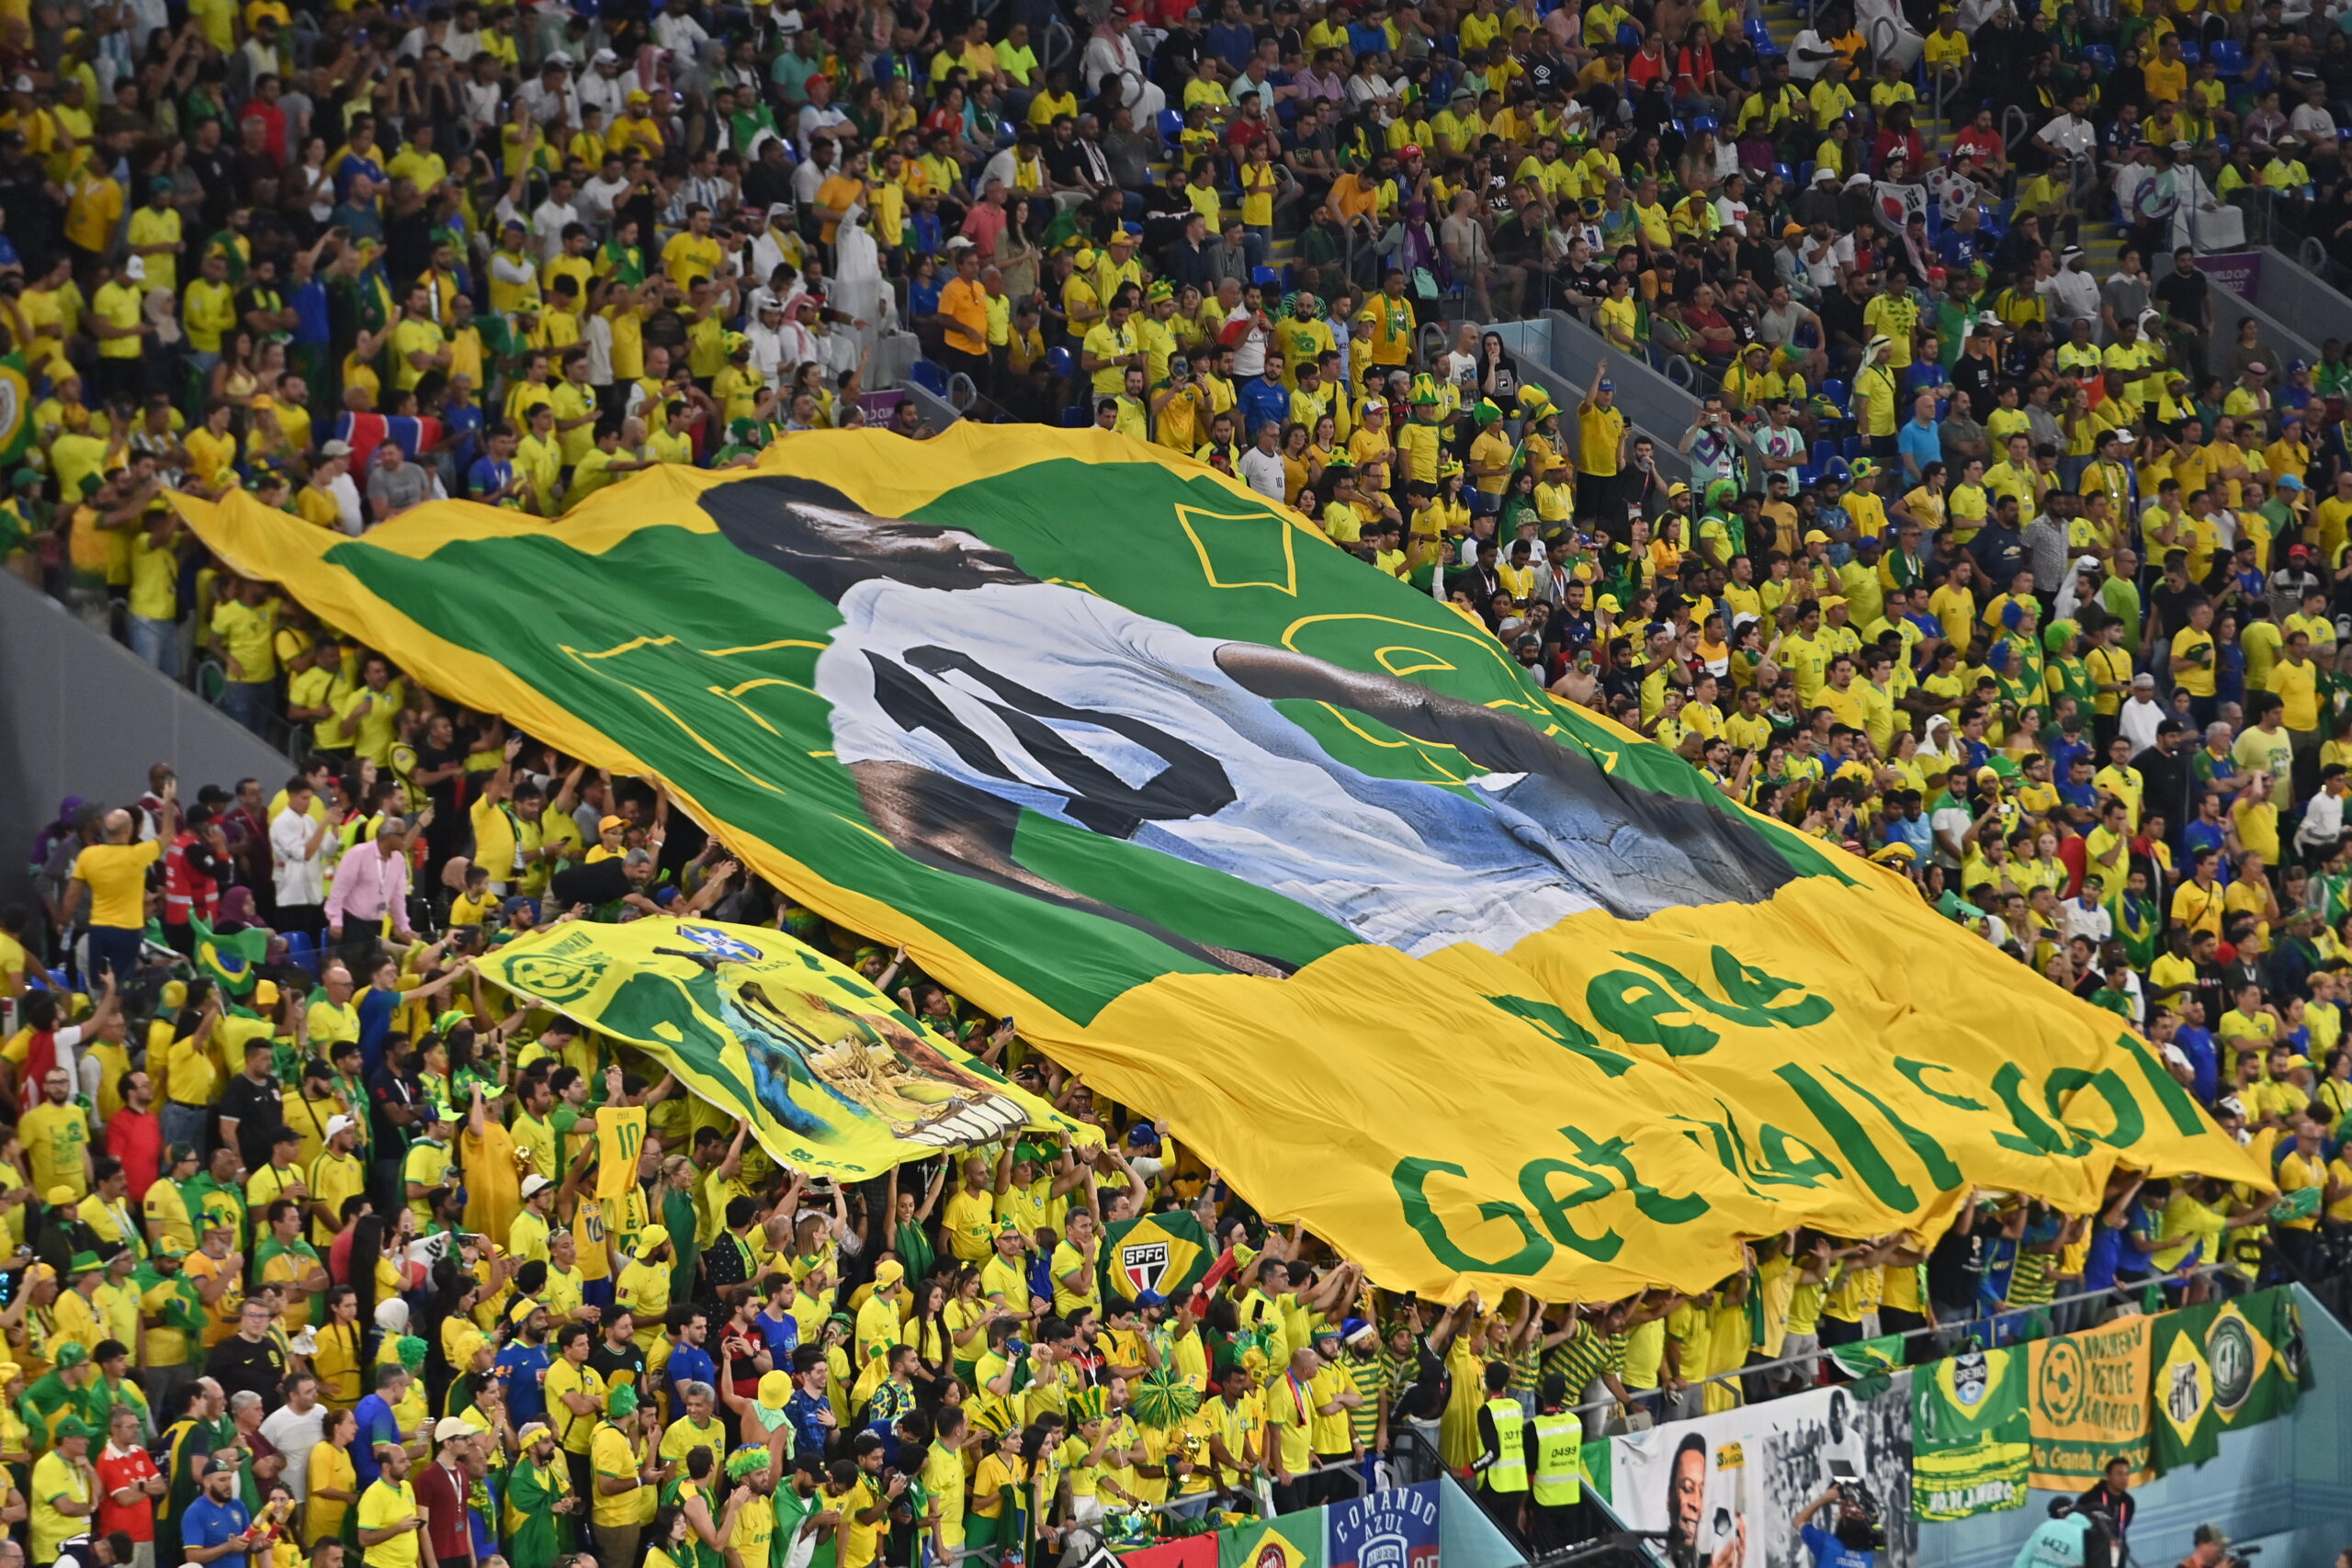 Μουντιάλ 2022, Βραζιλία - Νότια Κορέα 4-1: Μαγεία από την Σελεσάο, απογειώθηκε στους "8" με ολοκληρωτικό ποδόσφαιρο